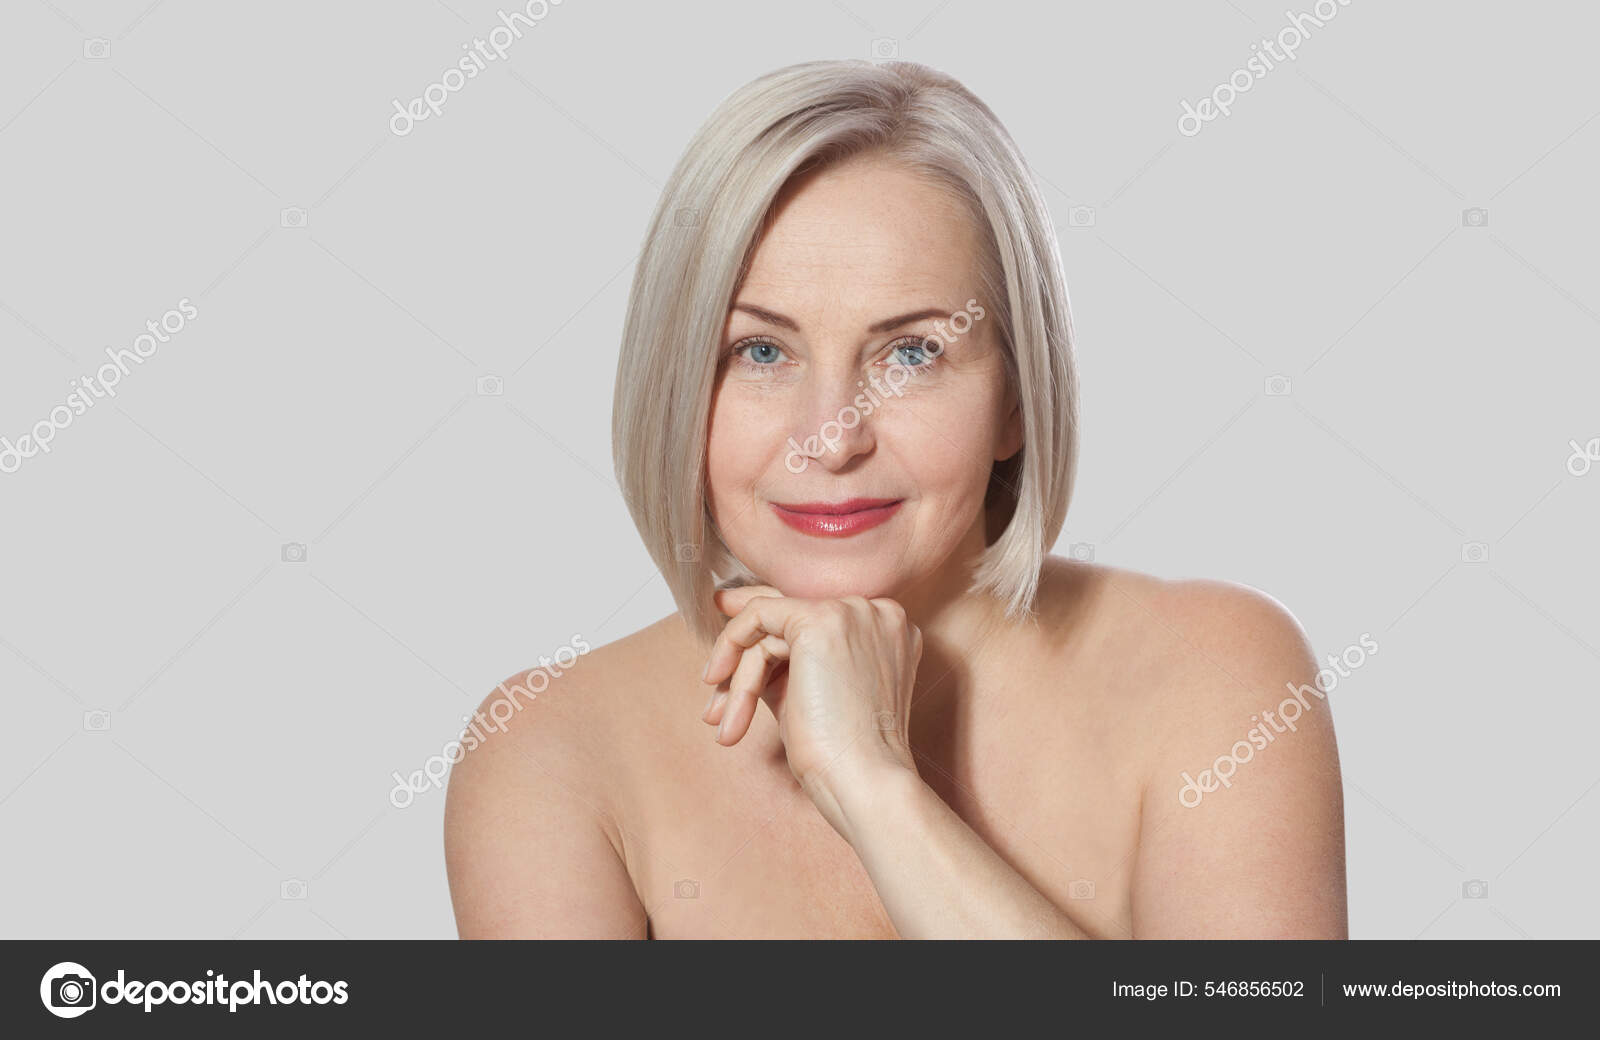 漂亮的中年金发女人露出她完美整洁的面容宏观脸具有自身缺点的现实形象 图库照片 C Victoreus